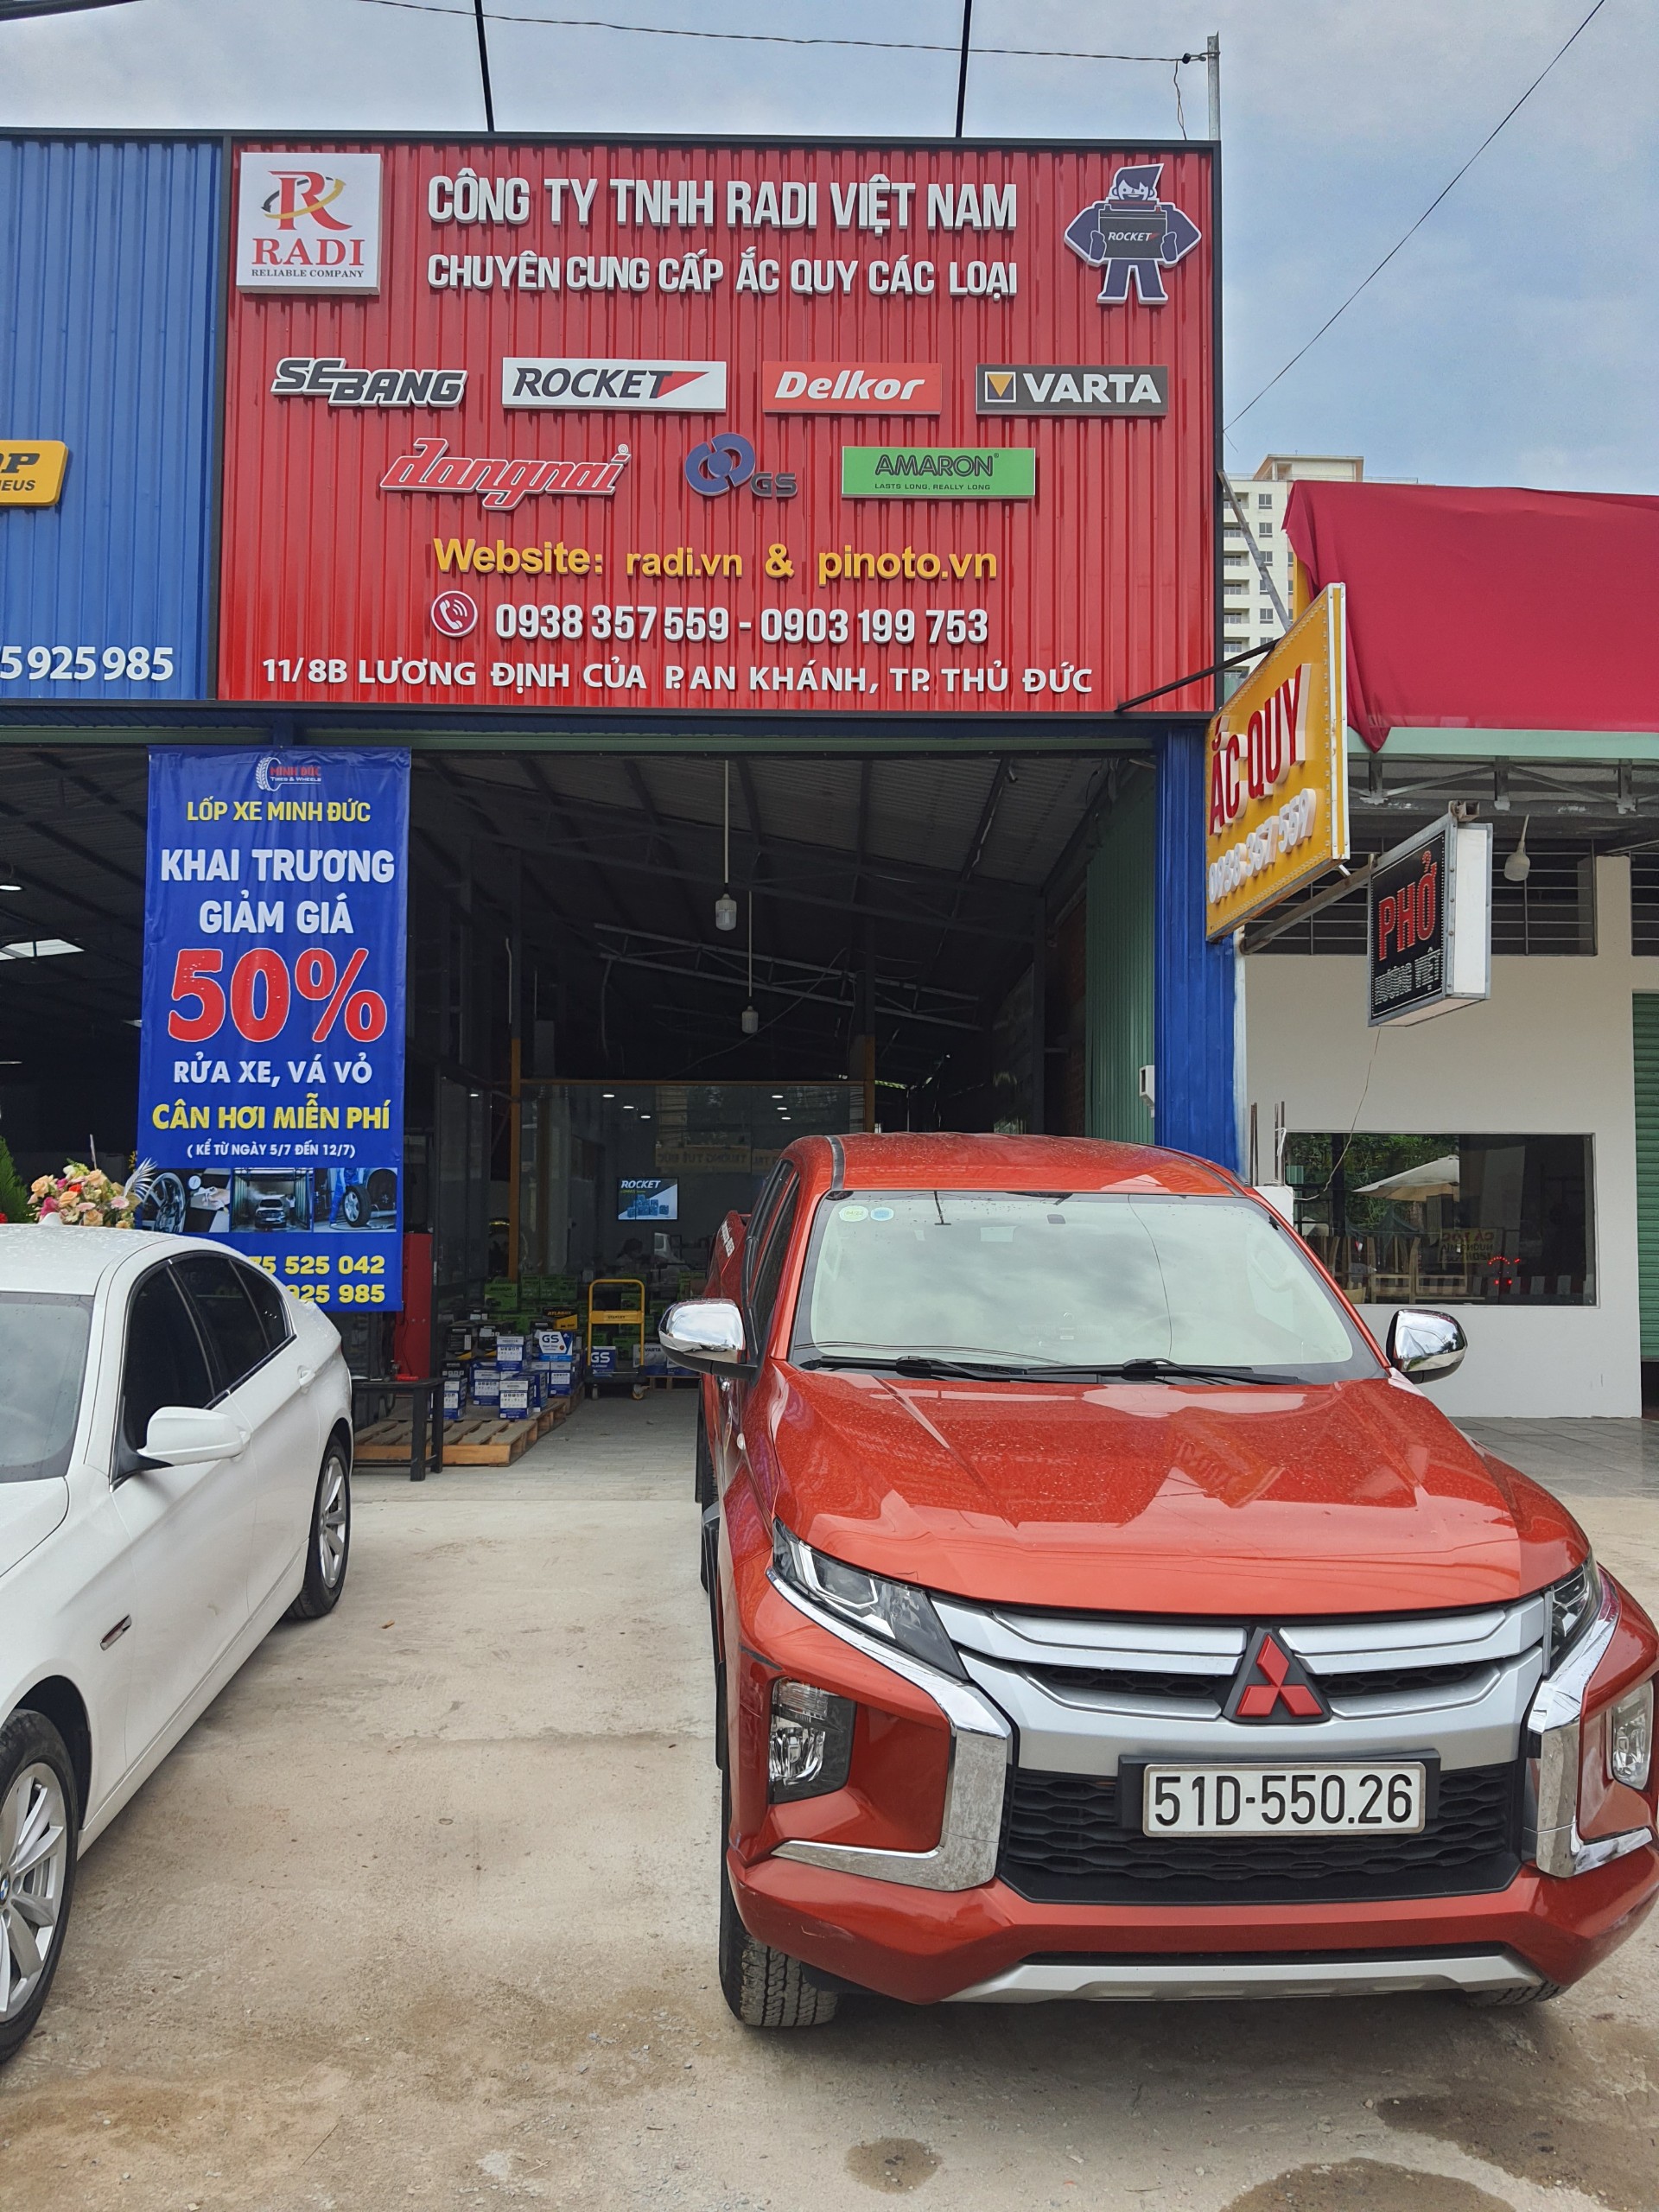 Cửa hàng ắc quy GS TPHCM - Đà Nẵng